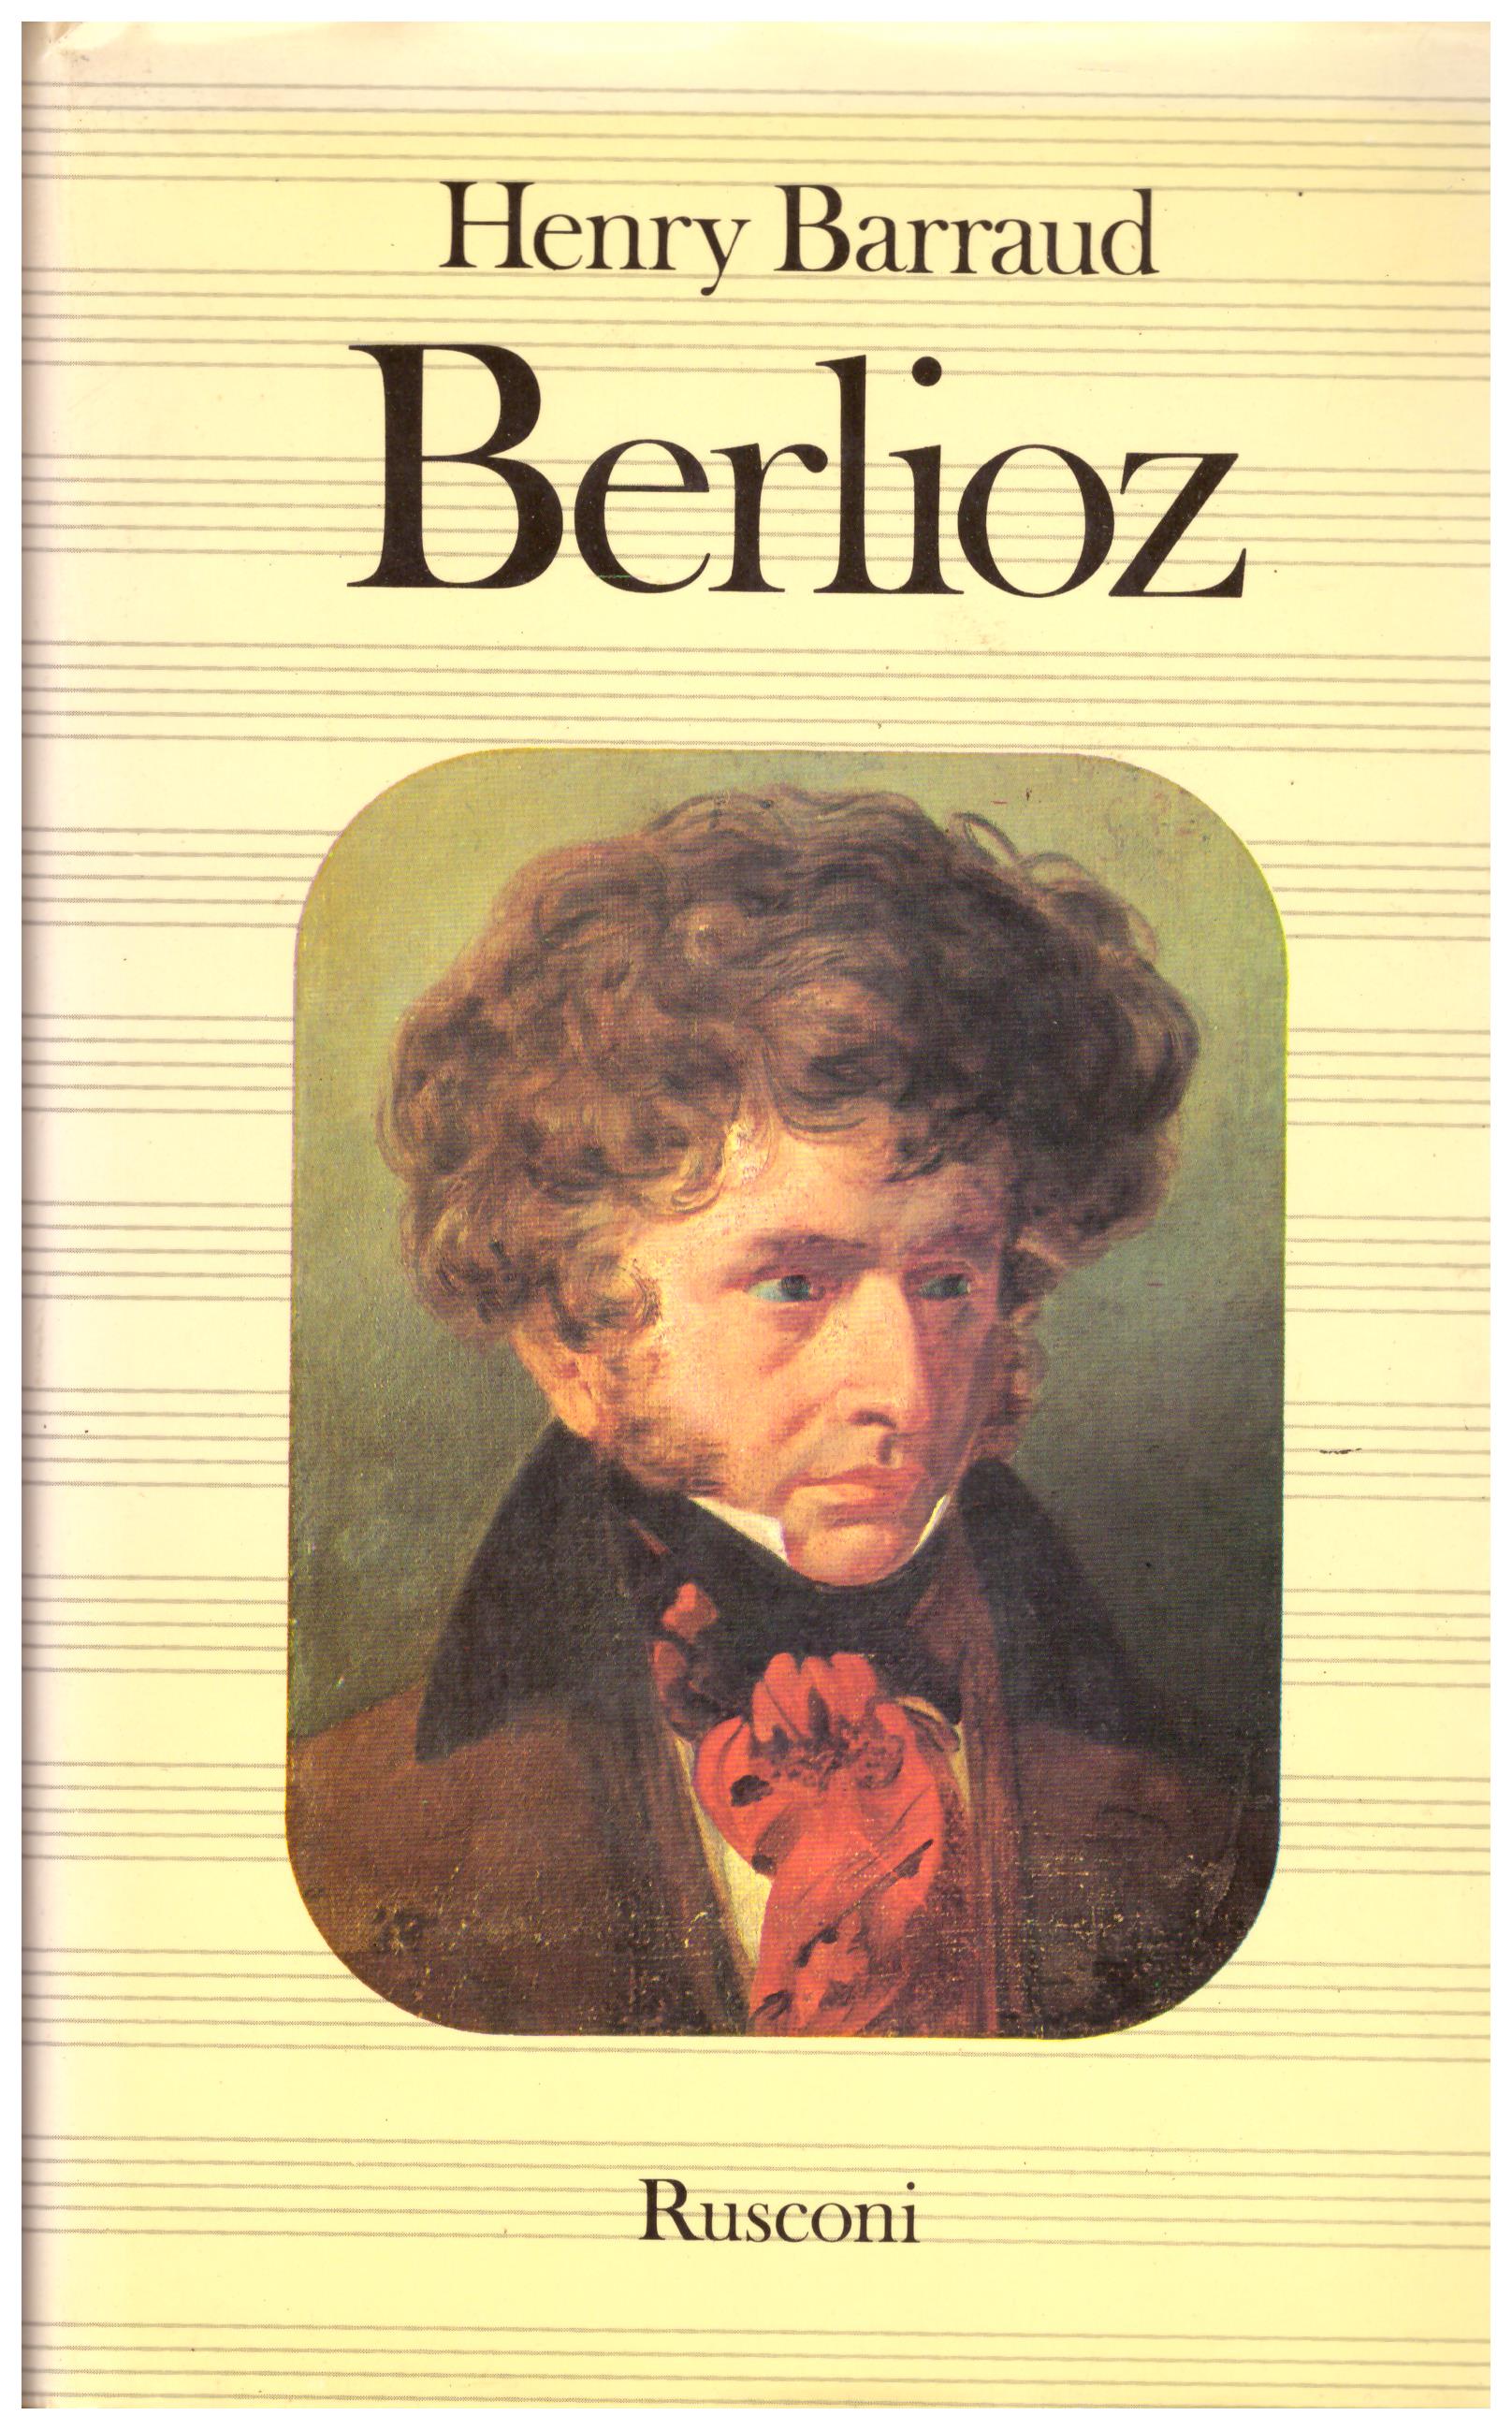 Titolo: Berlioz     Autore: Henry Barraud    Editore: Rusconi 1978